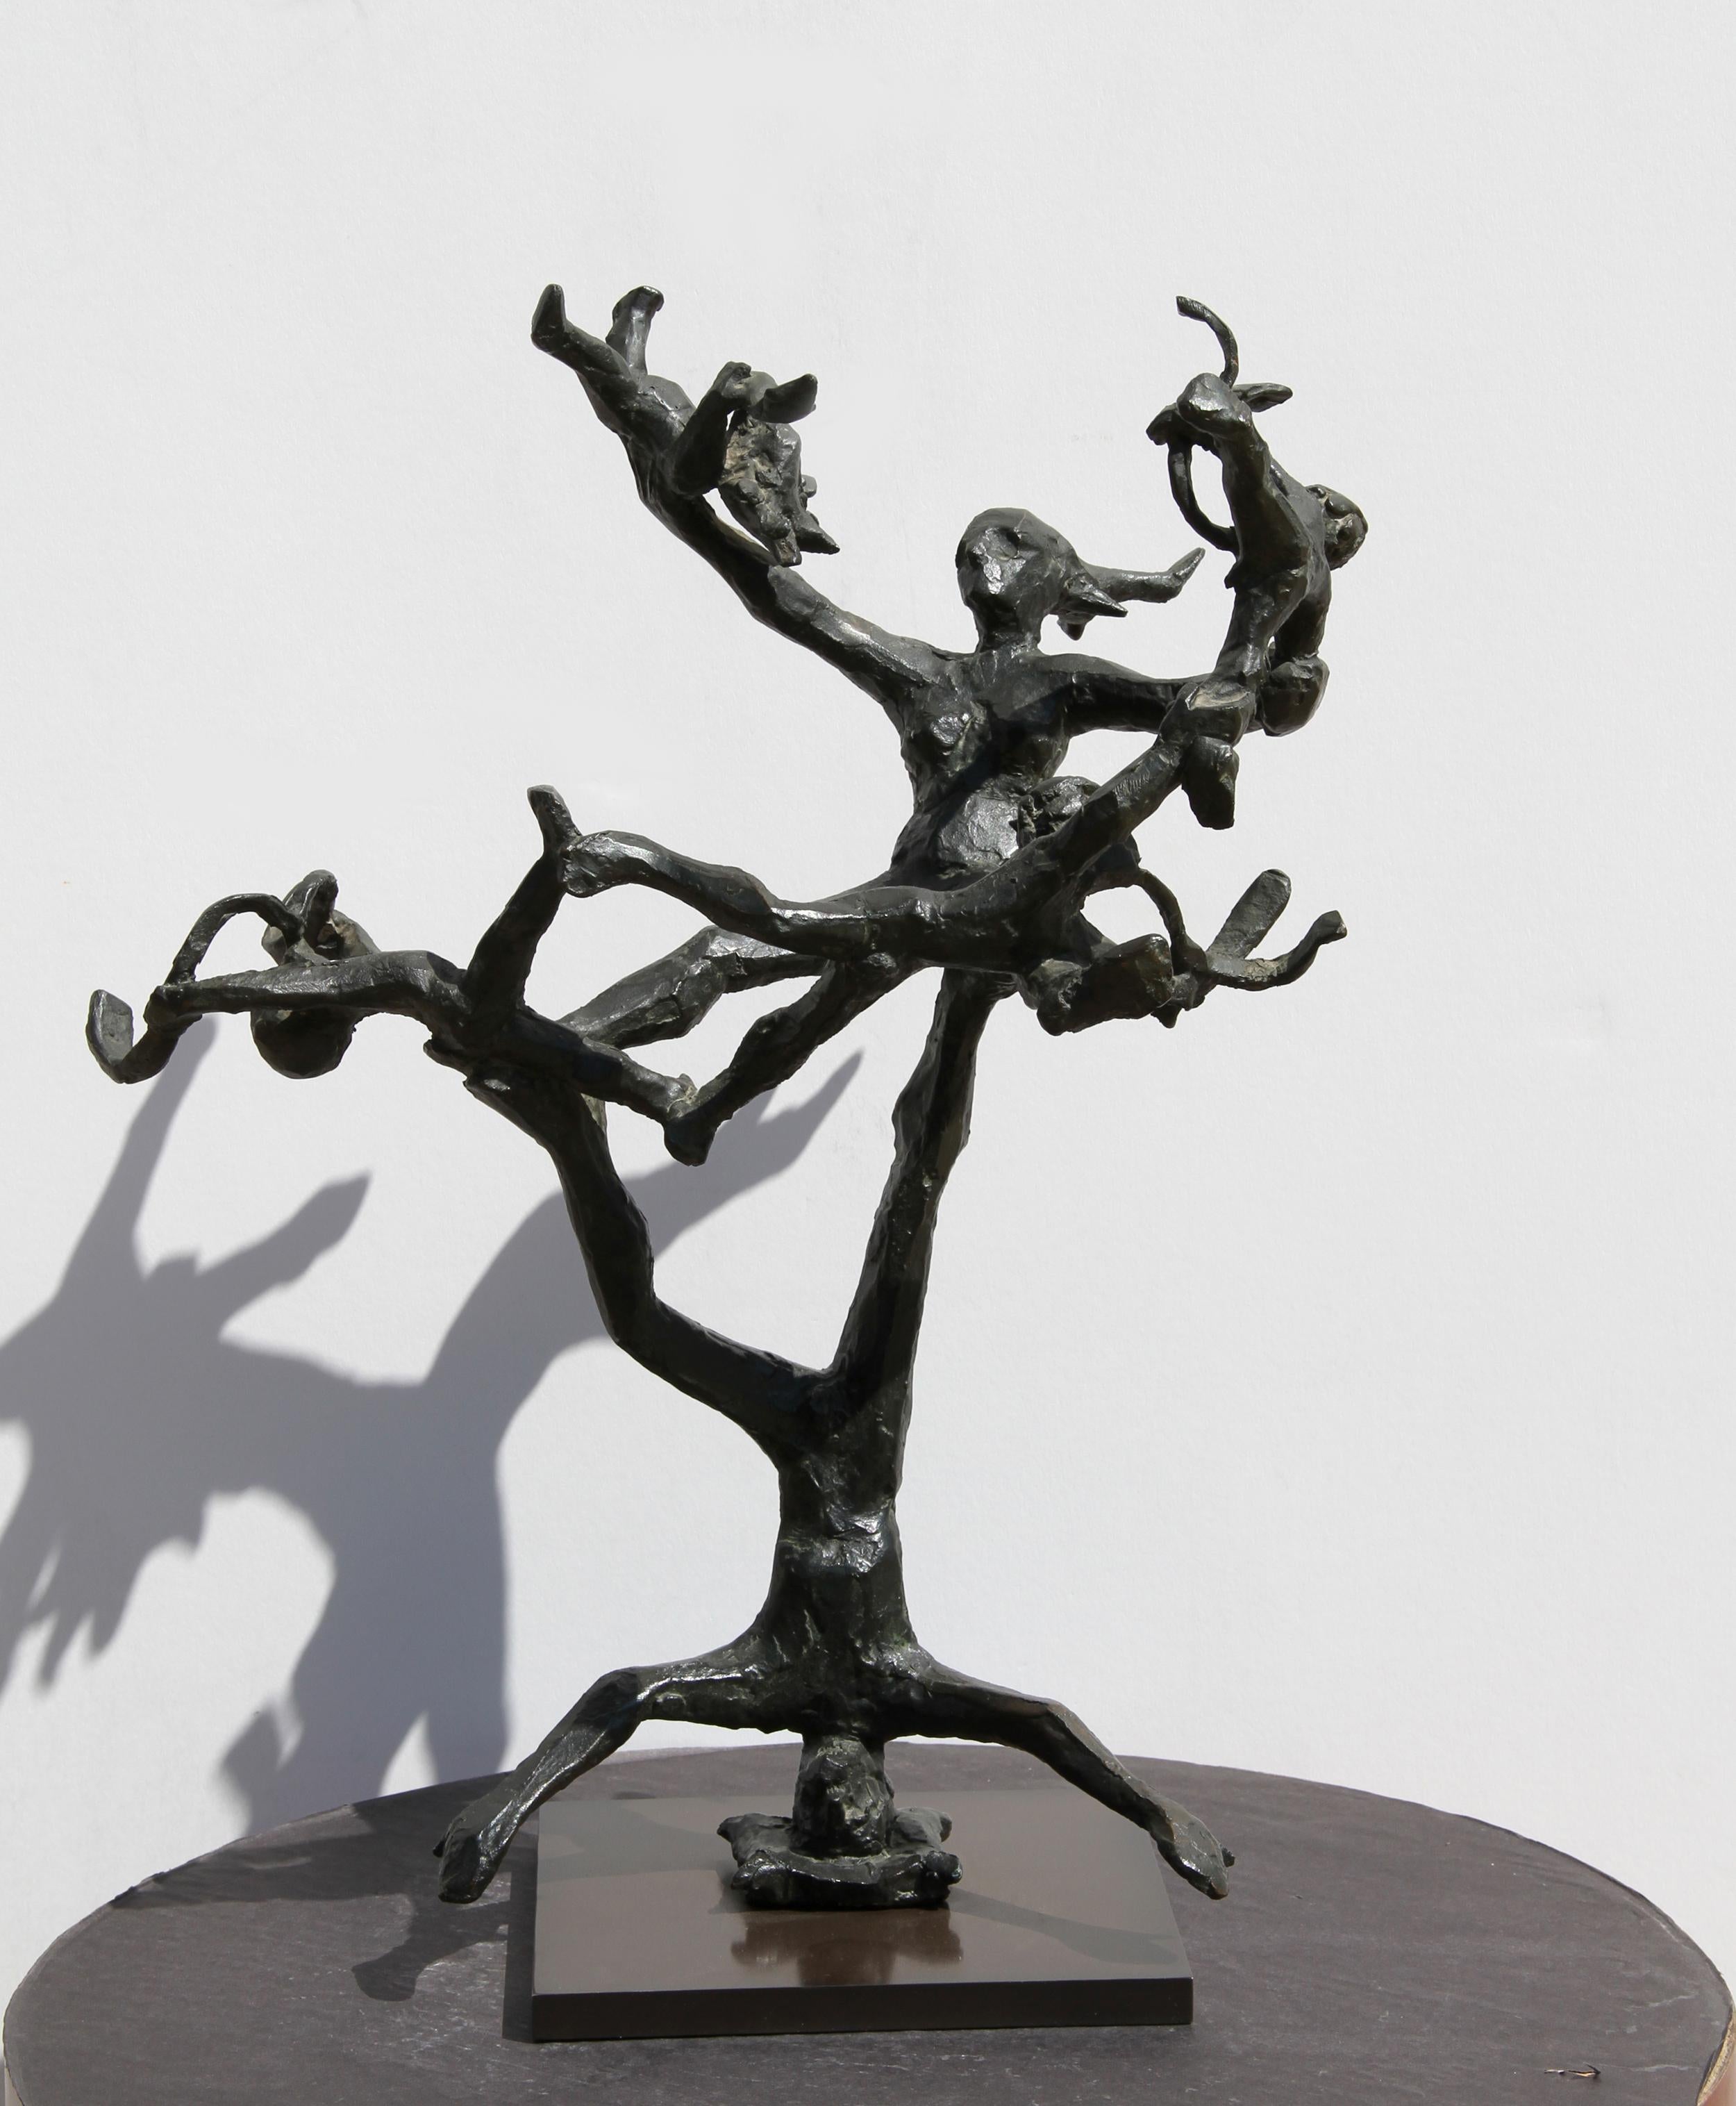 Künstler: Unbekannt
Titel: Akrobaten
Jahr: 1968
Medium: Bronze-Skulptur, signiert 'PR'
Größe: 18 in. x 14 in. x 10 in. (45,72 cm x 35,56 cm x 25,4 cm)